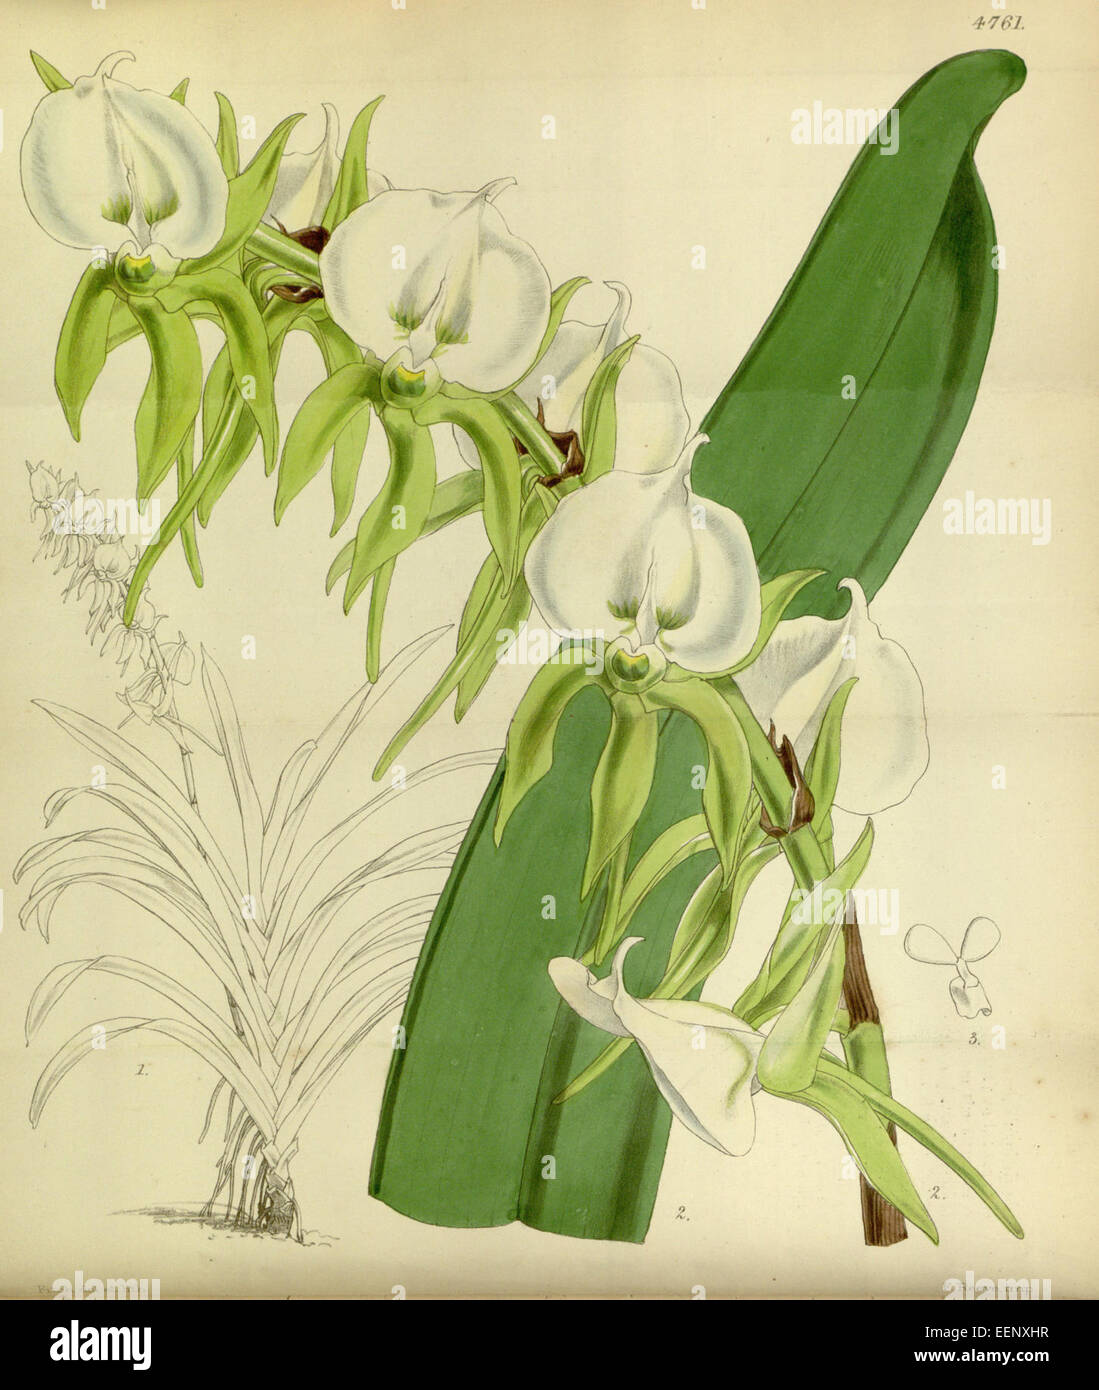 Angraecum eburneum - Curtis' 80 (Ser. 3 no. 10) pl. 4761 (1854) Stock Photo